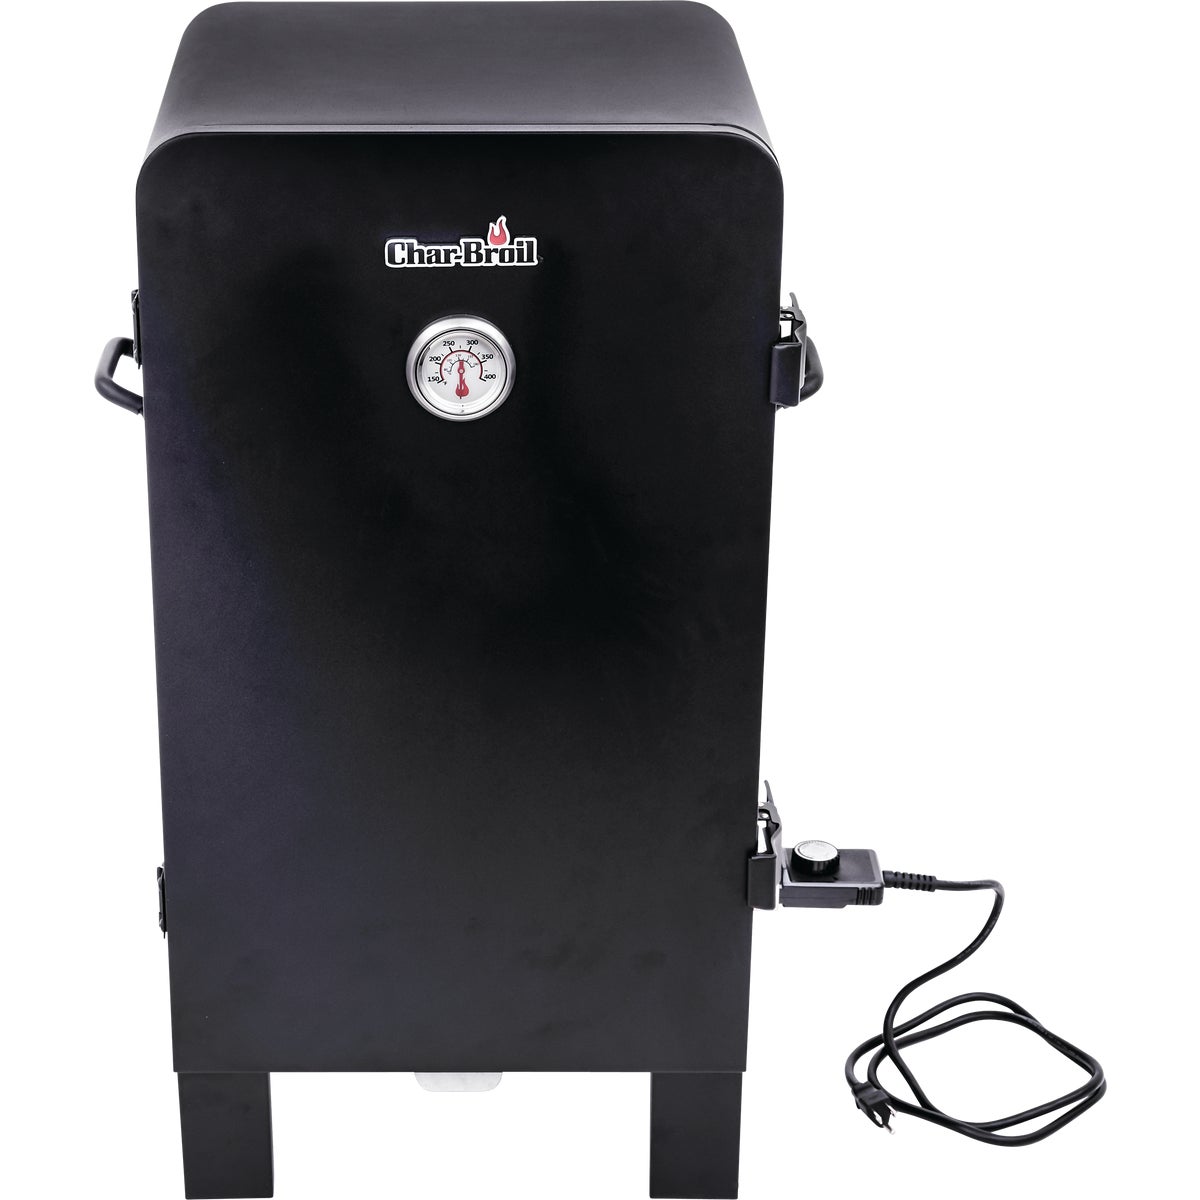 Item 800432, Analog electric smoker has 3 adjustable chrome plated smoking racks.